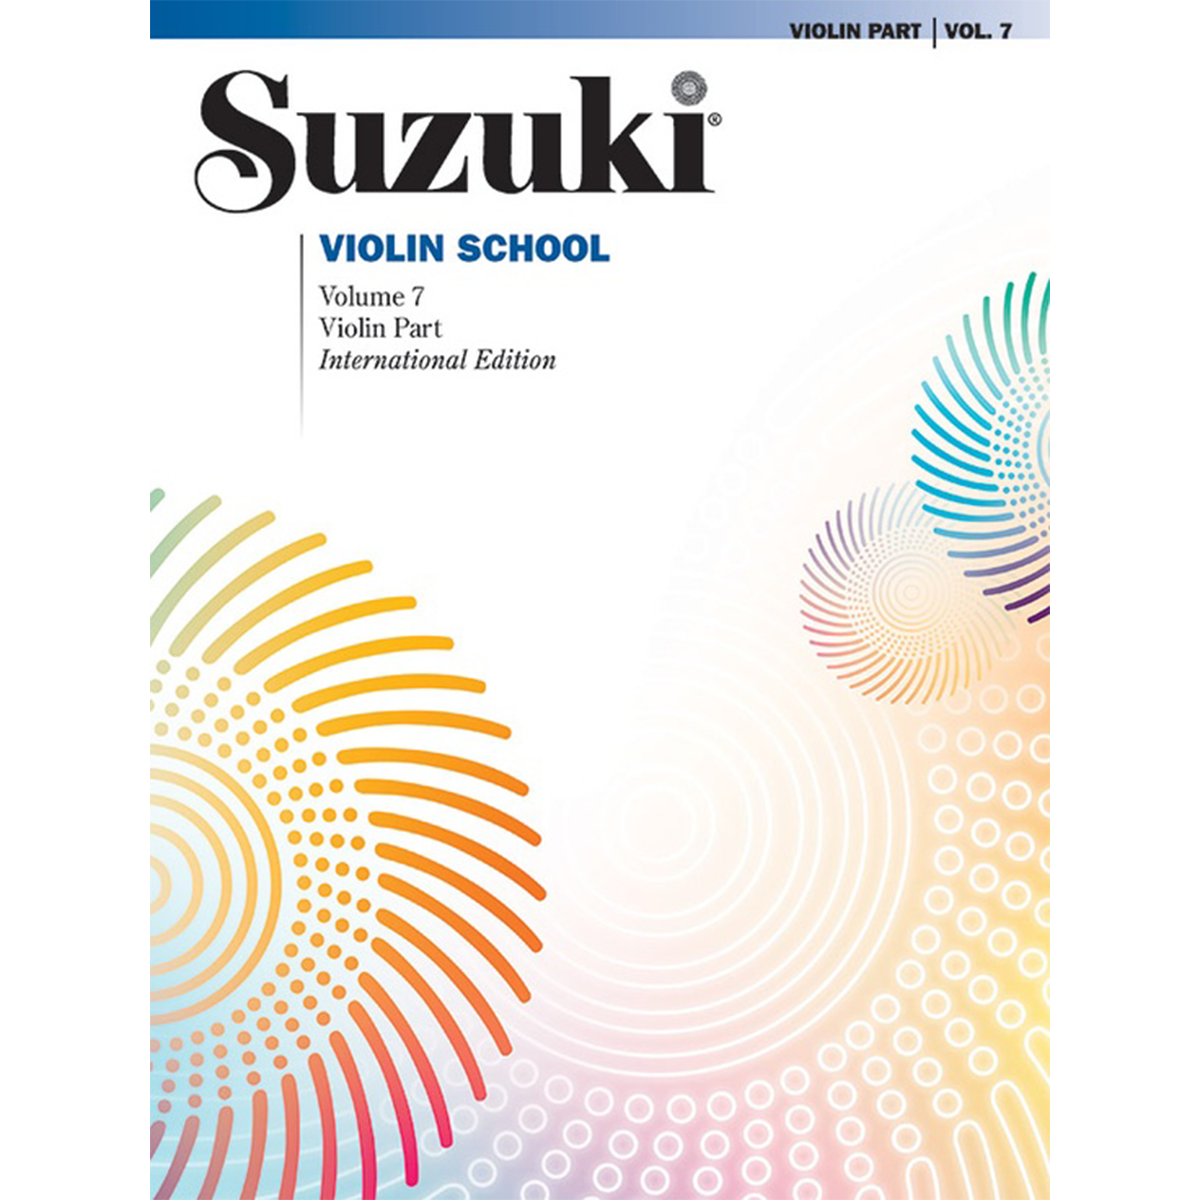 Suzuki Violin School: Violin Part, Vol. 7 in action